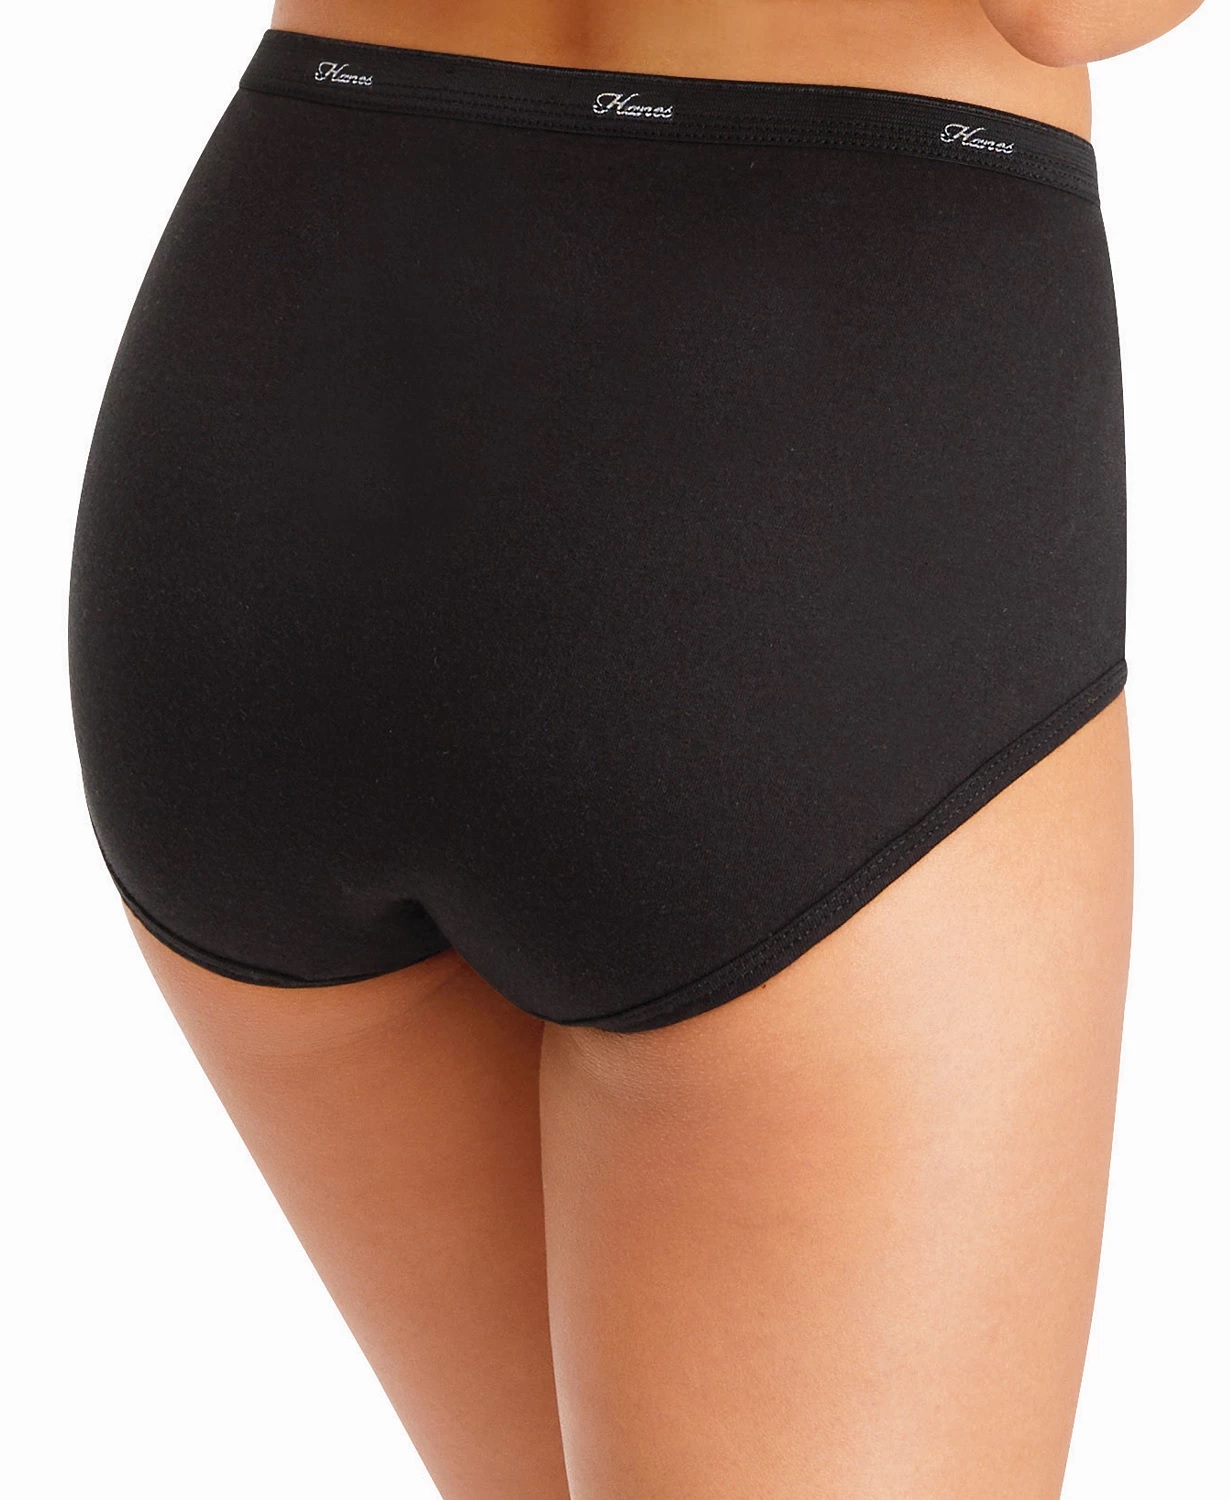 Hanes Women's Brief Underwear, Moisture-Wicking, 10-Pack Assorted 6 